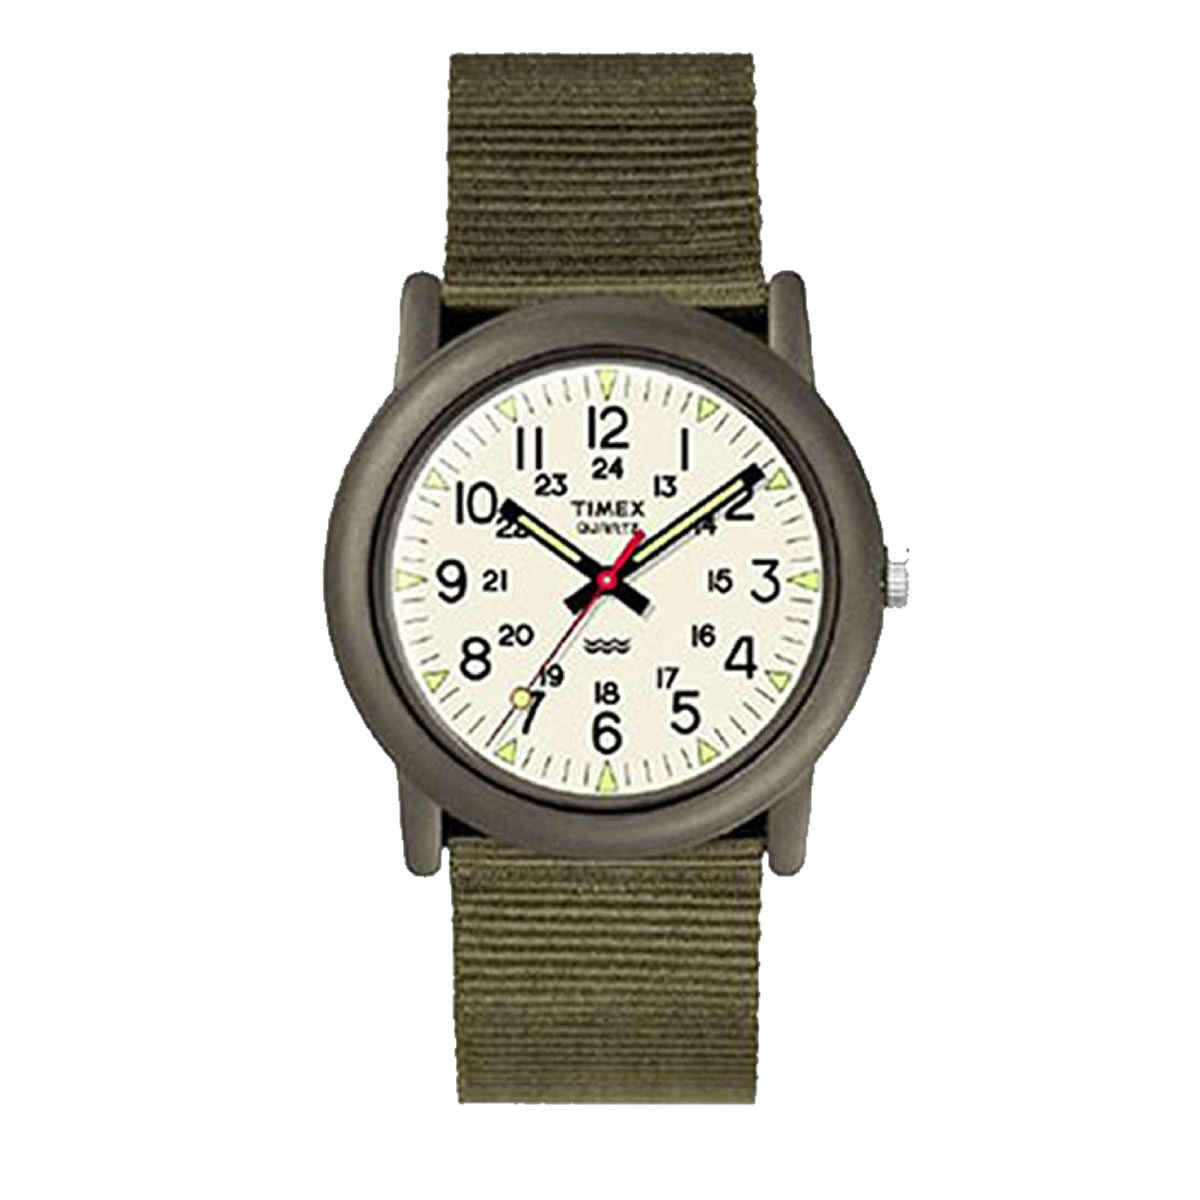 TIMEX(タイメックス)腕時計/キャンパー 日本限定アイボリーダイアル/カーキ TW2P59800入荷致しました。 | 懐中時計 スイス時計